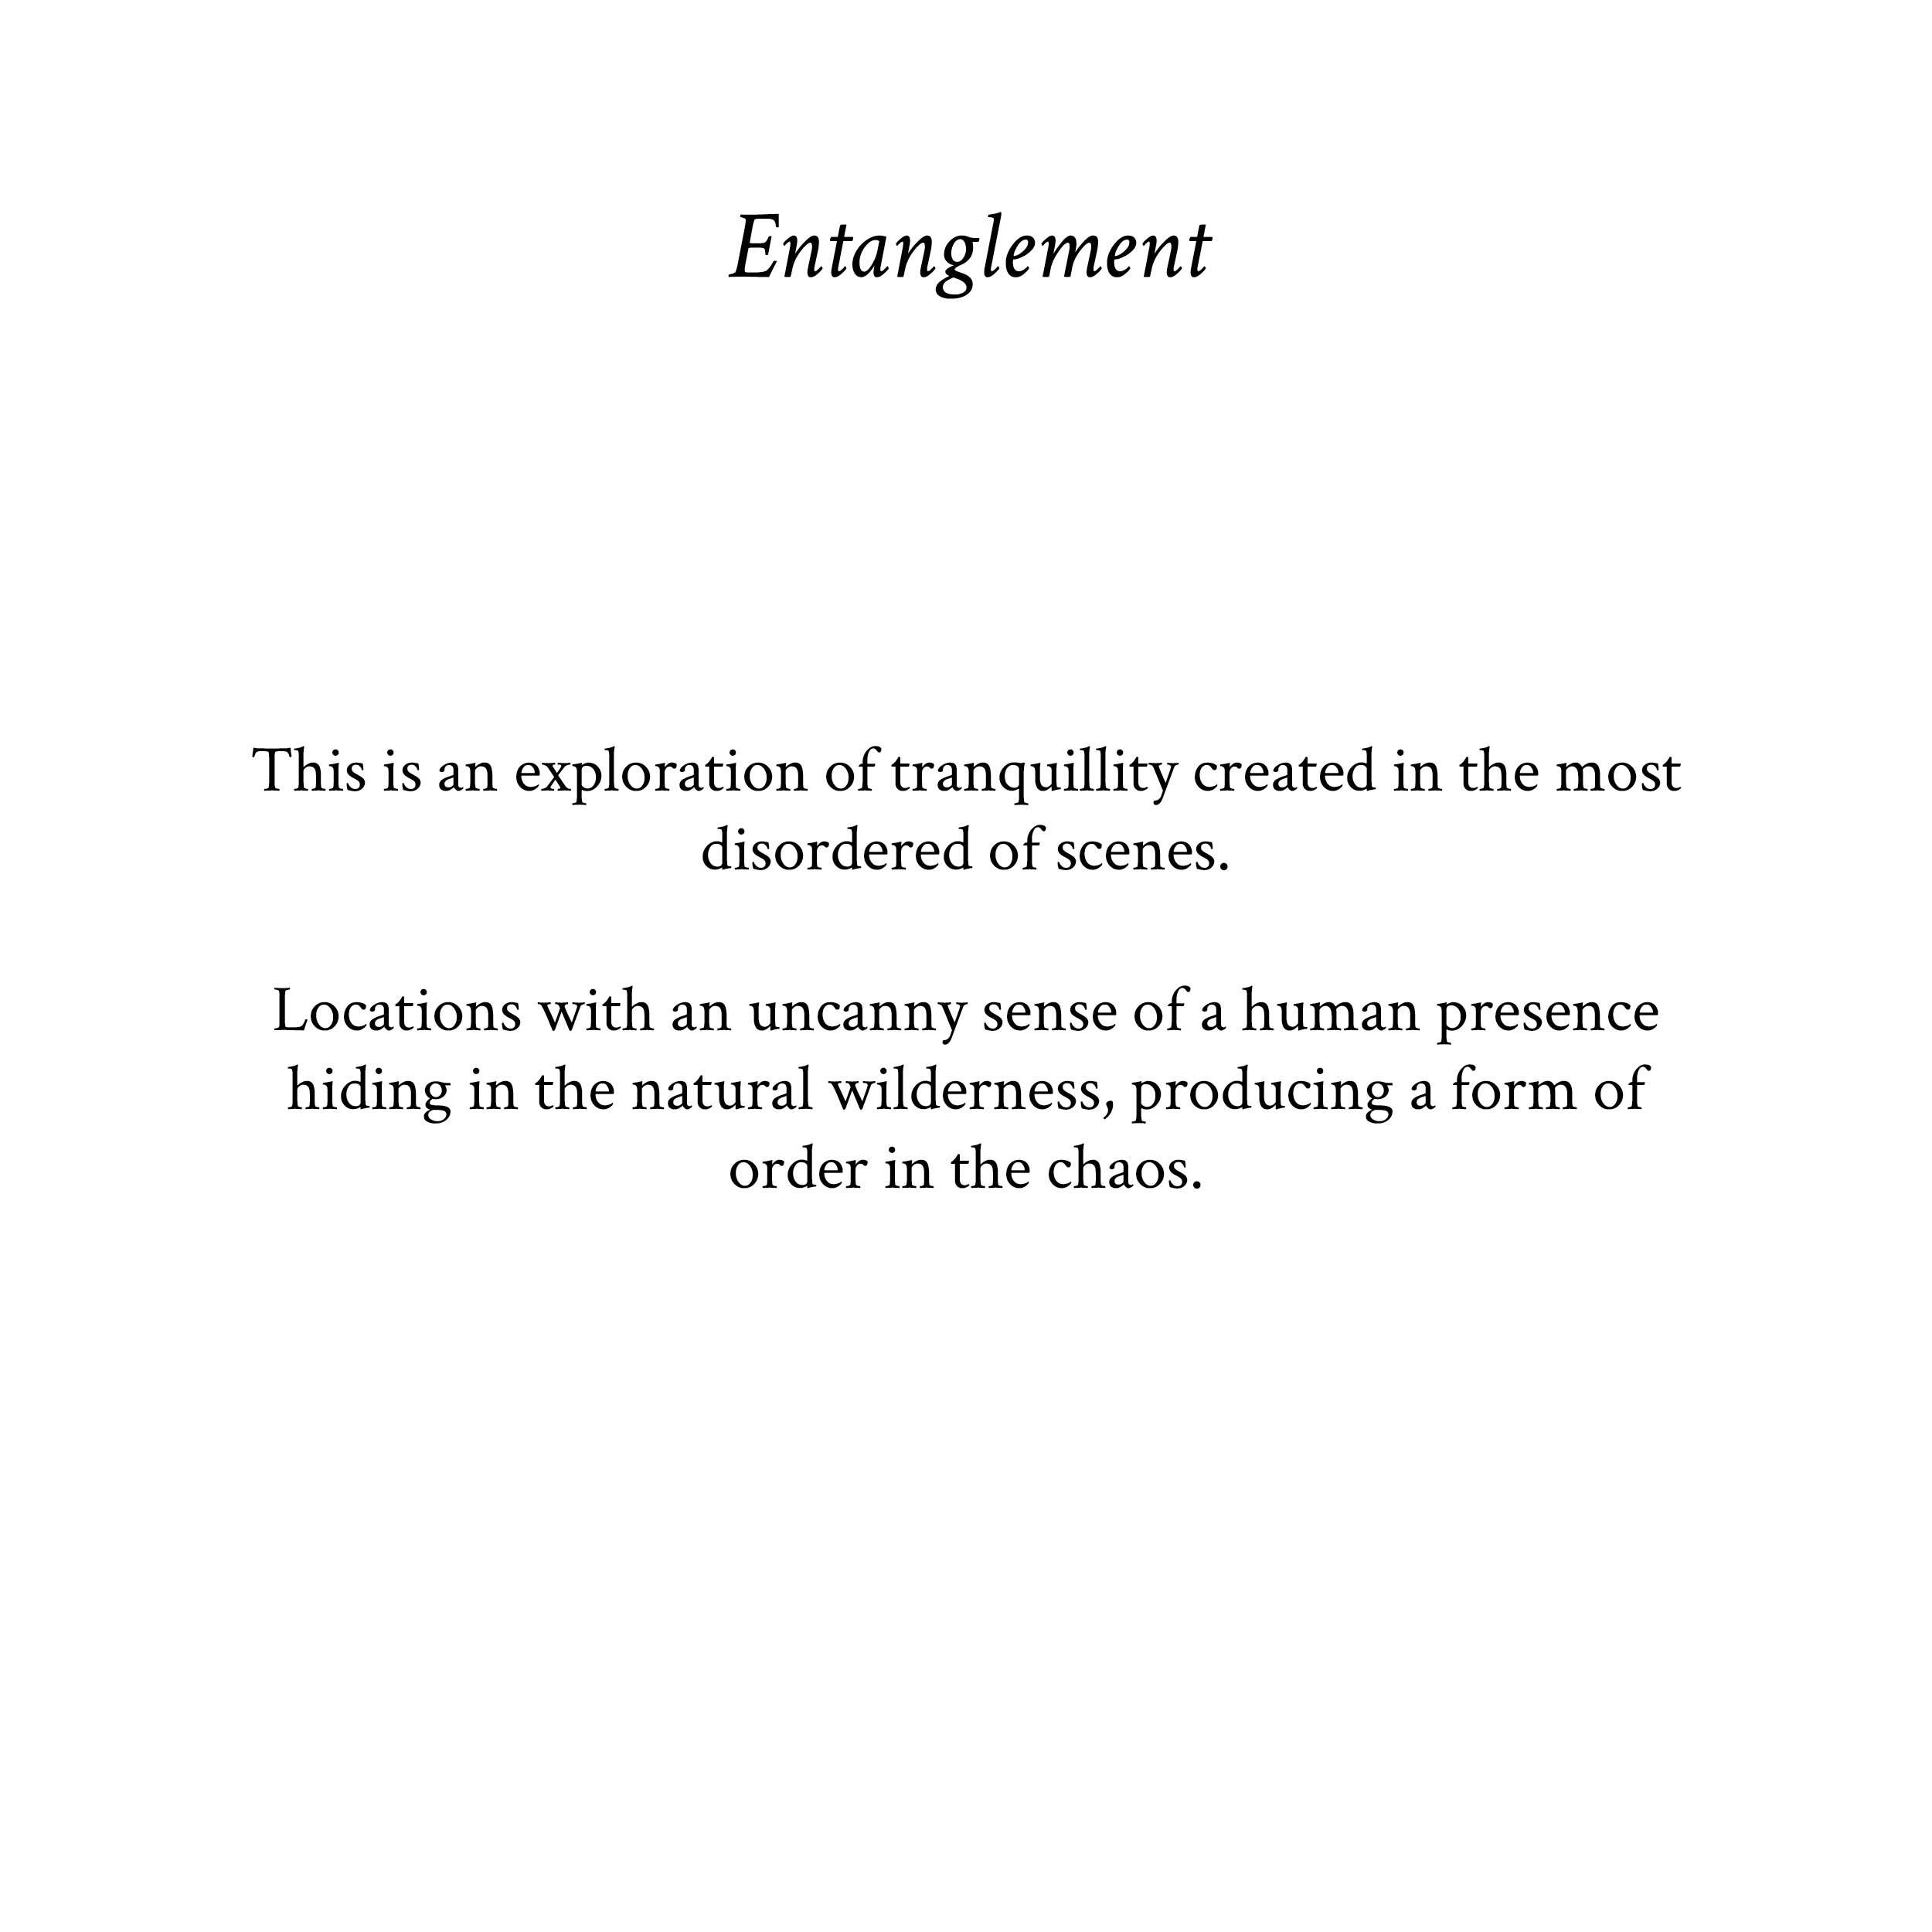 entanglement text.jpg